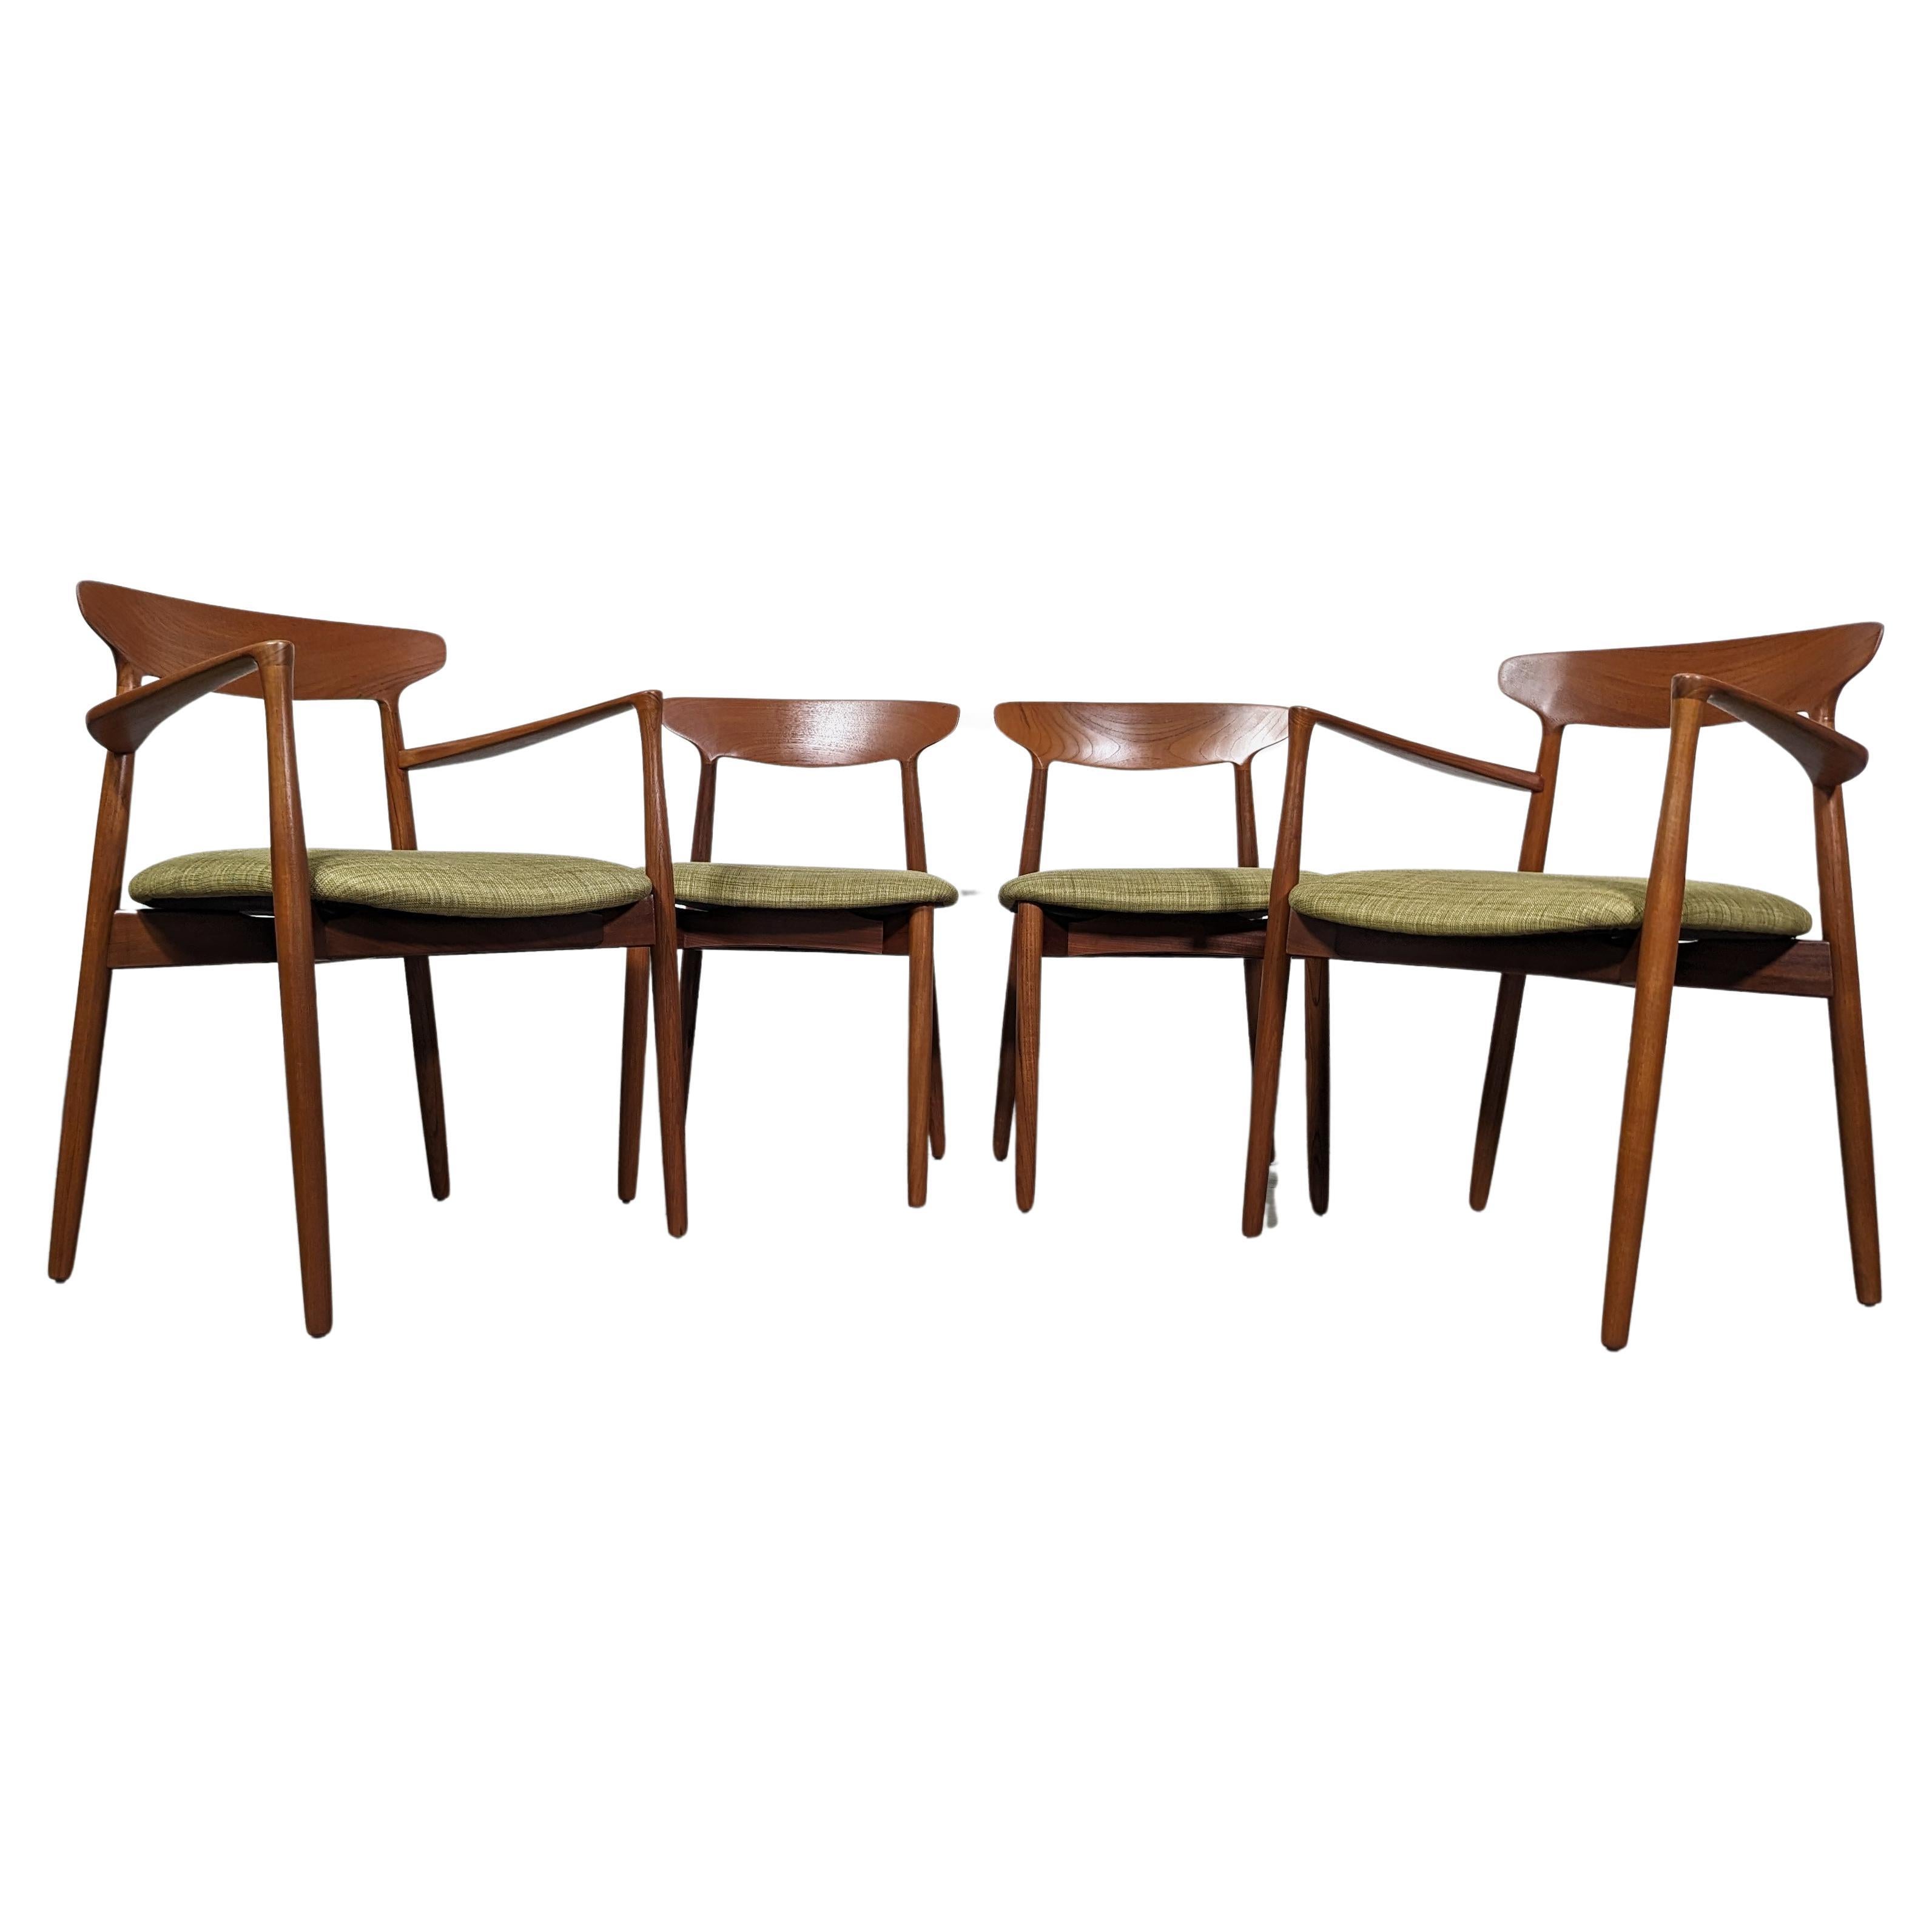 Mid Century Teak Chairs by Harry Østergaard for Randers Møbelfabrik, c1960s